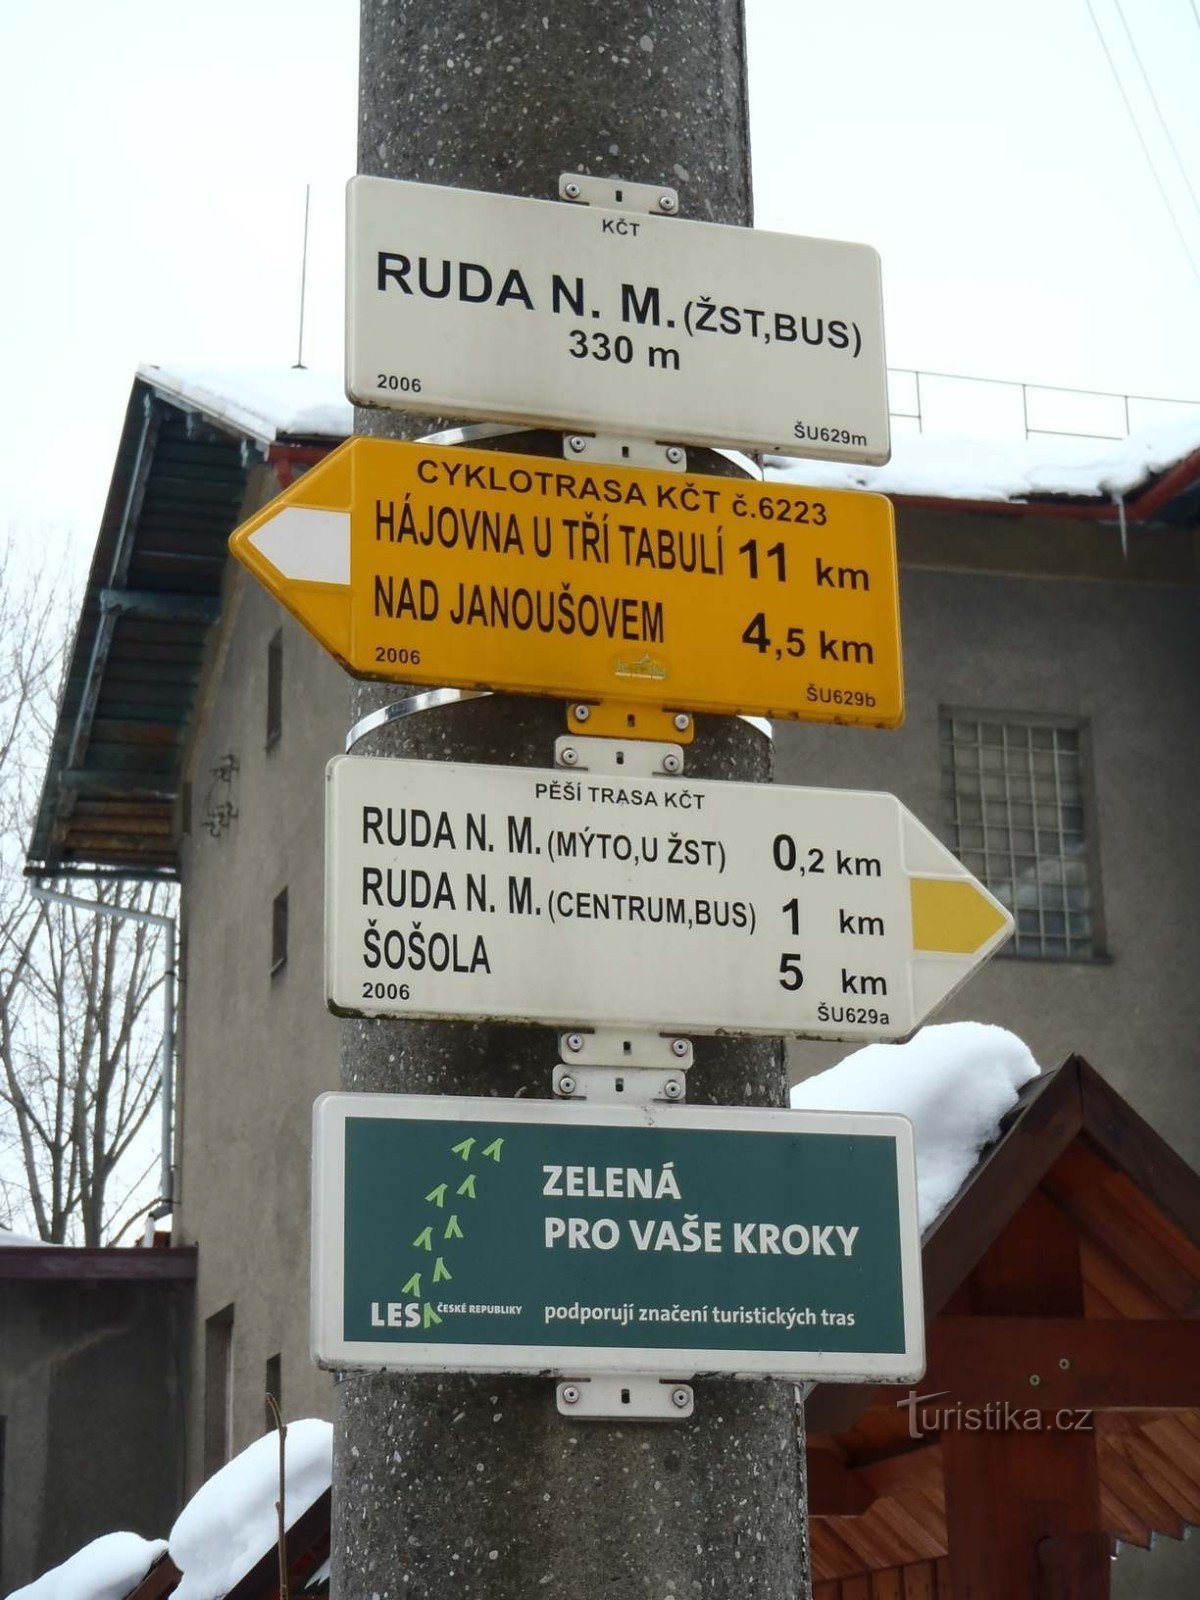 Σιδηροδρομική πινακίδα Ruda nad Moravou - 18.2.2012 Φεβρουαρίου XNUMX